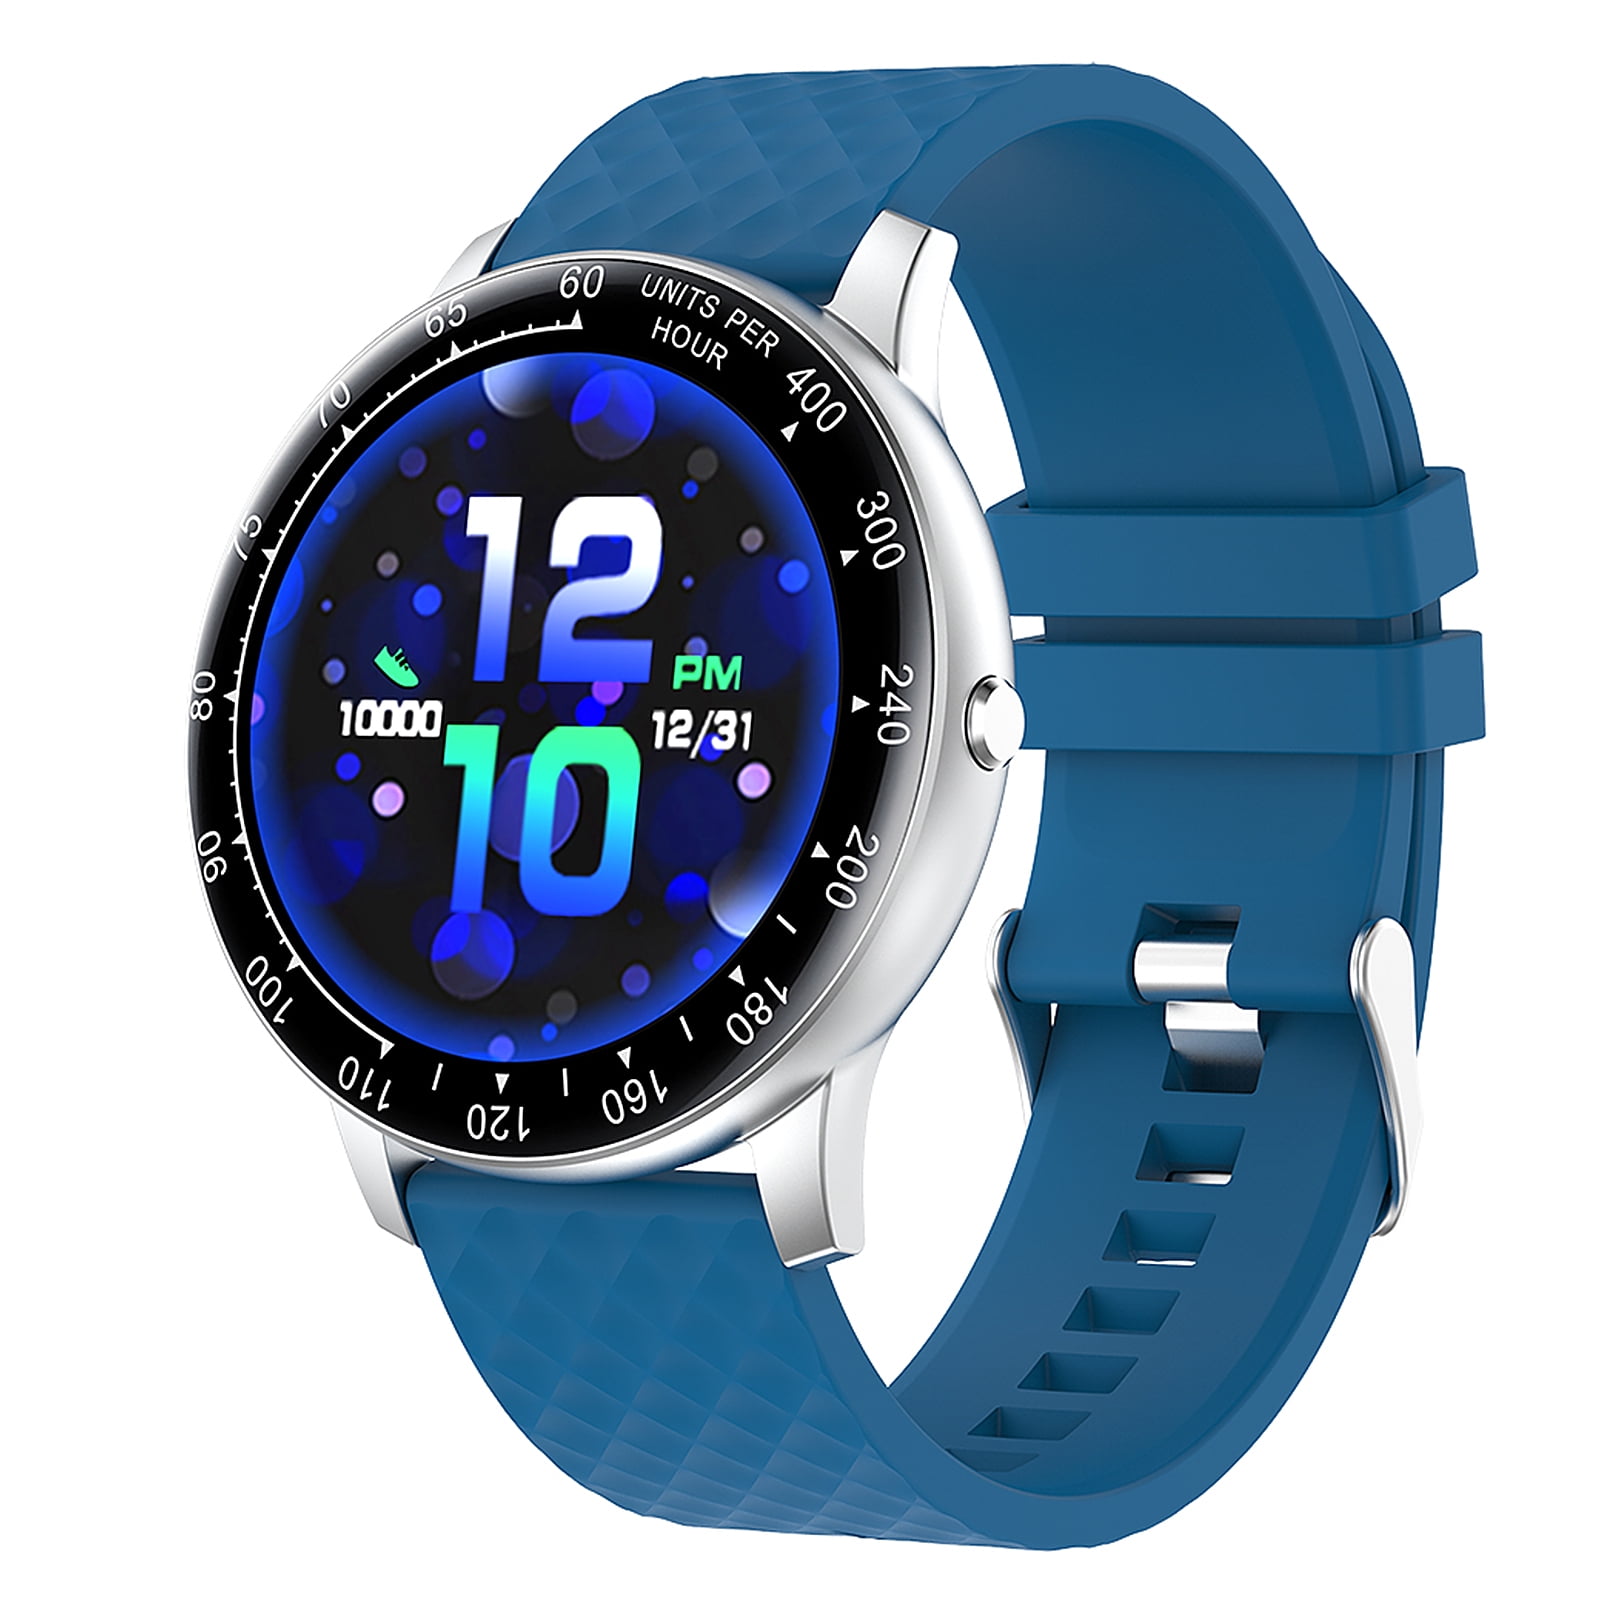 Смарт часы bandrate отзывы. H30 Smart watch. Zl02d смарт часы синие. Женские водонепроницаемые наручные часы Smart watch h8. Смарт часы синие мужские.